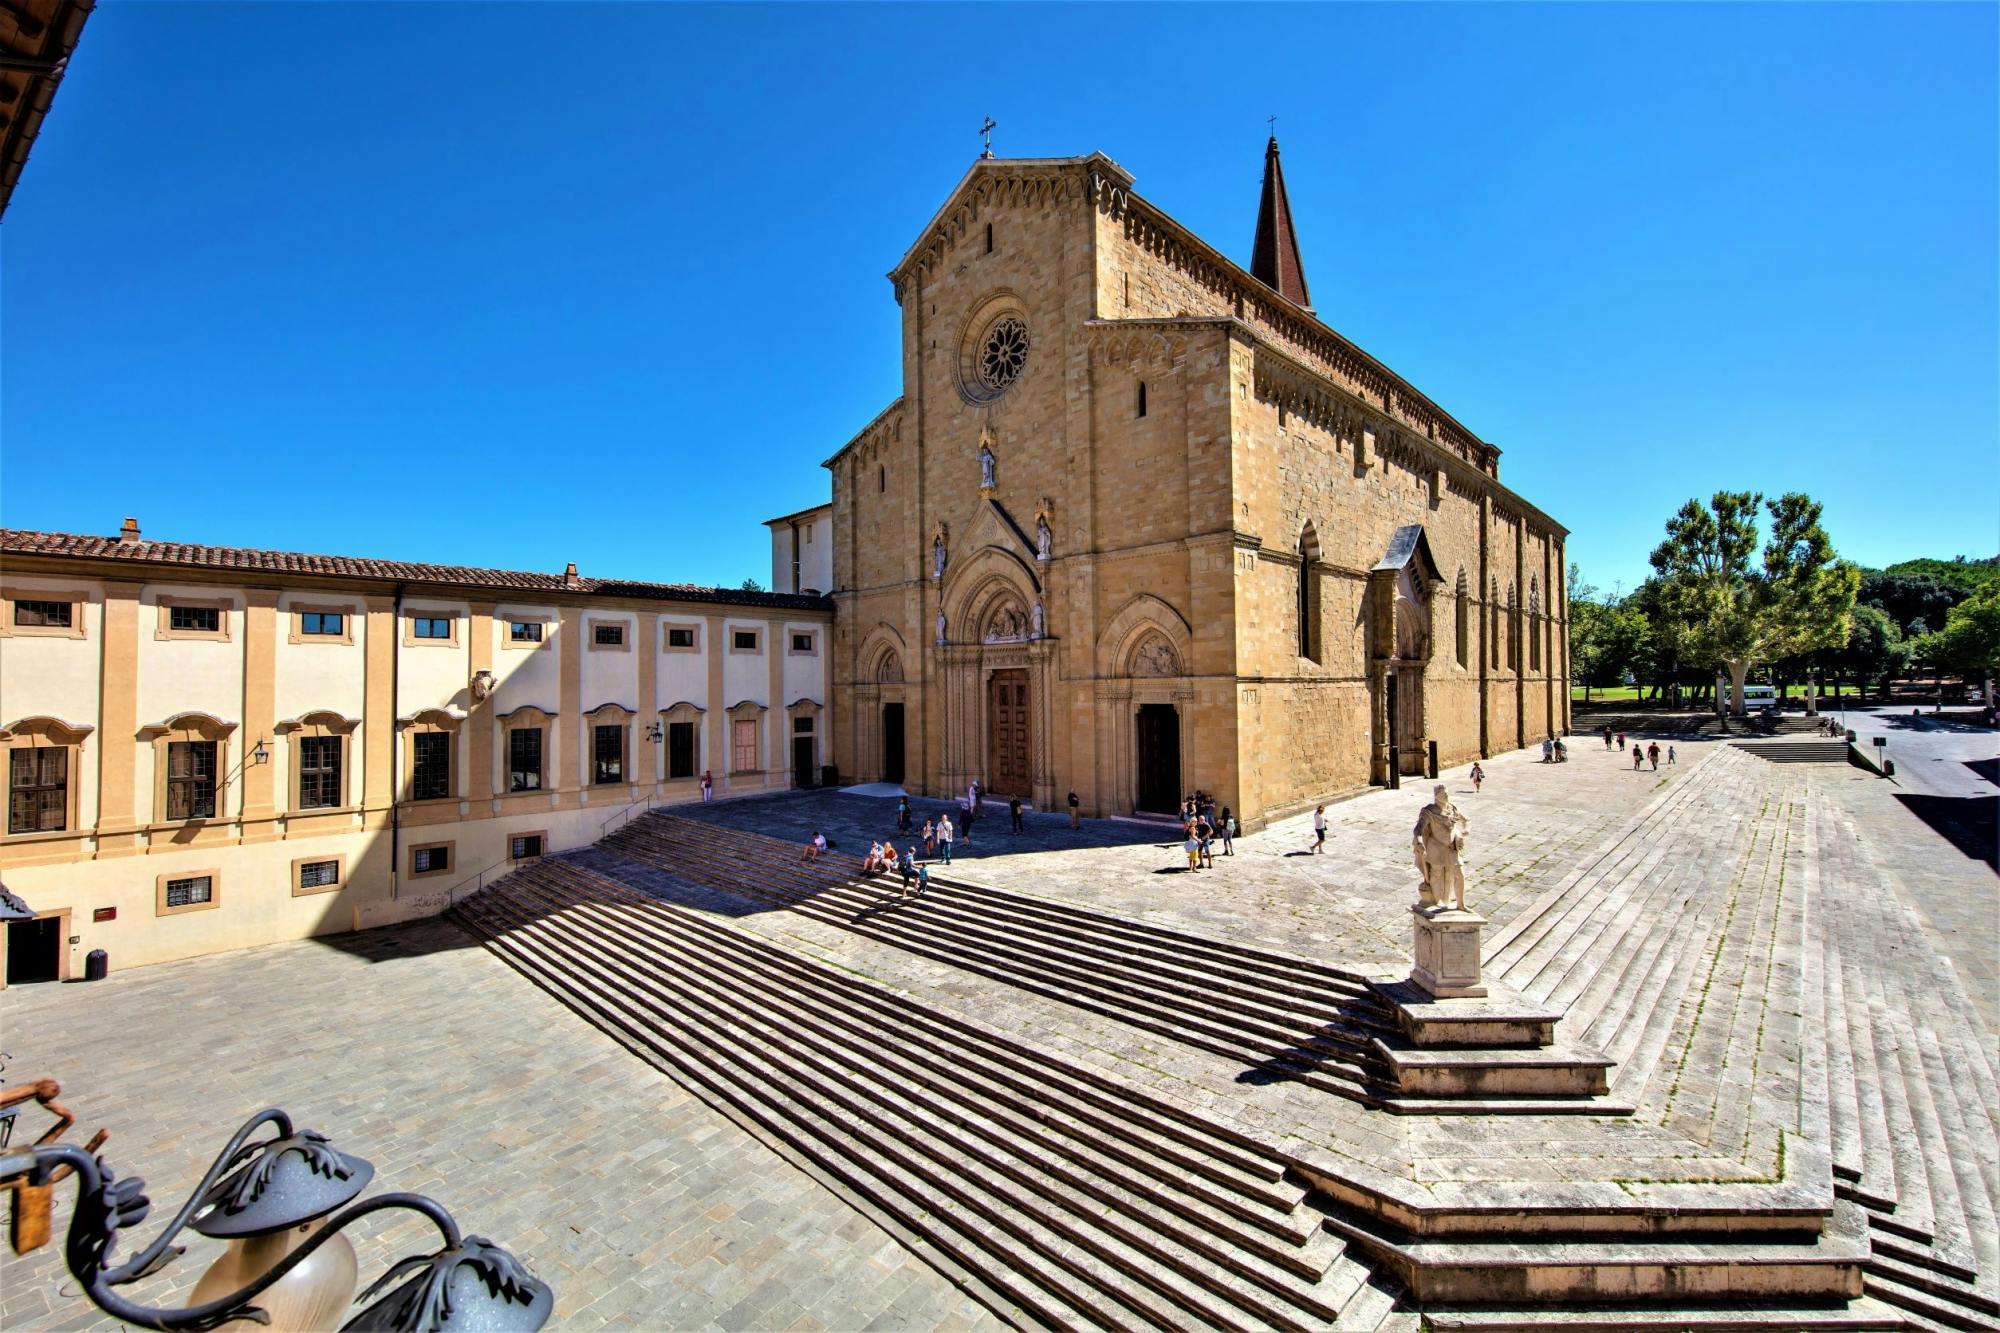 Tour del complesso del Duomo di Arezzo con audioguida